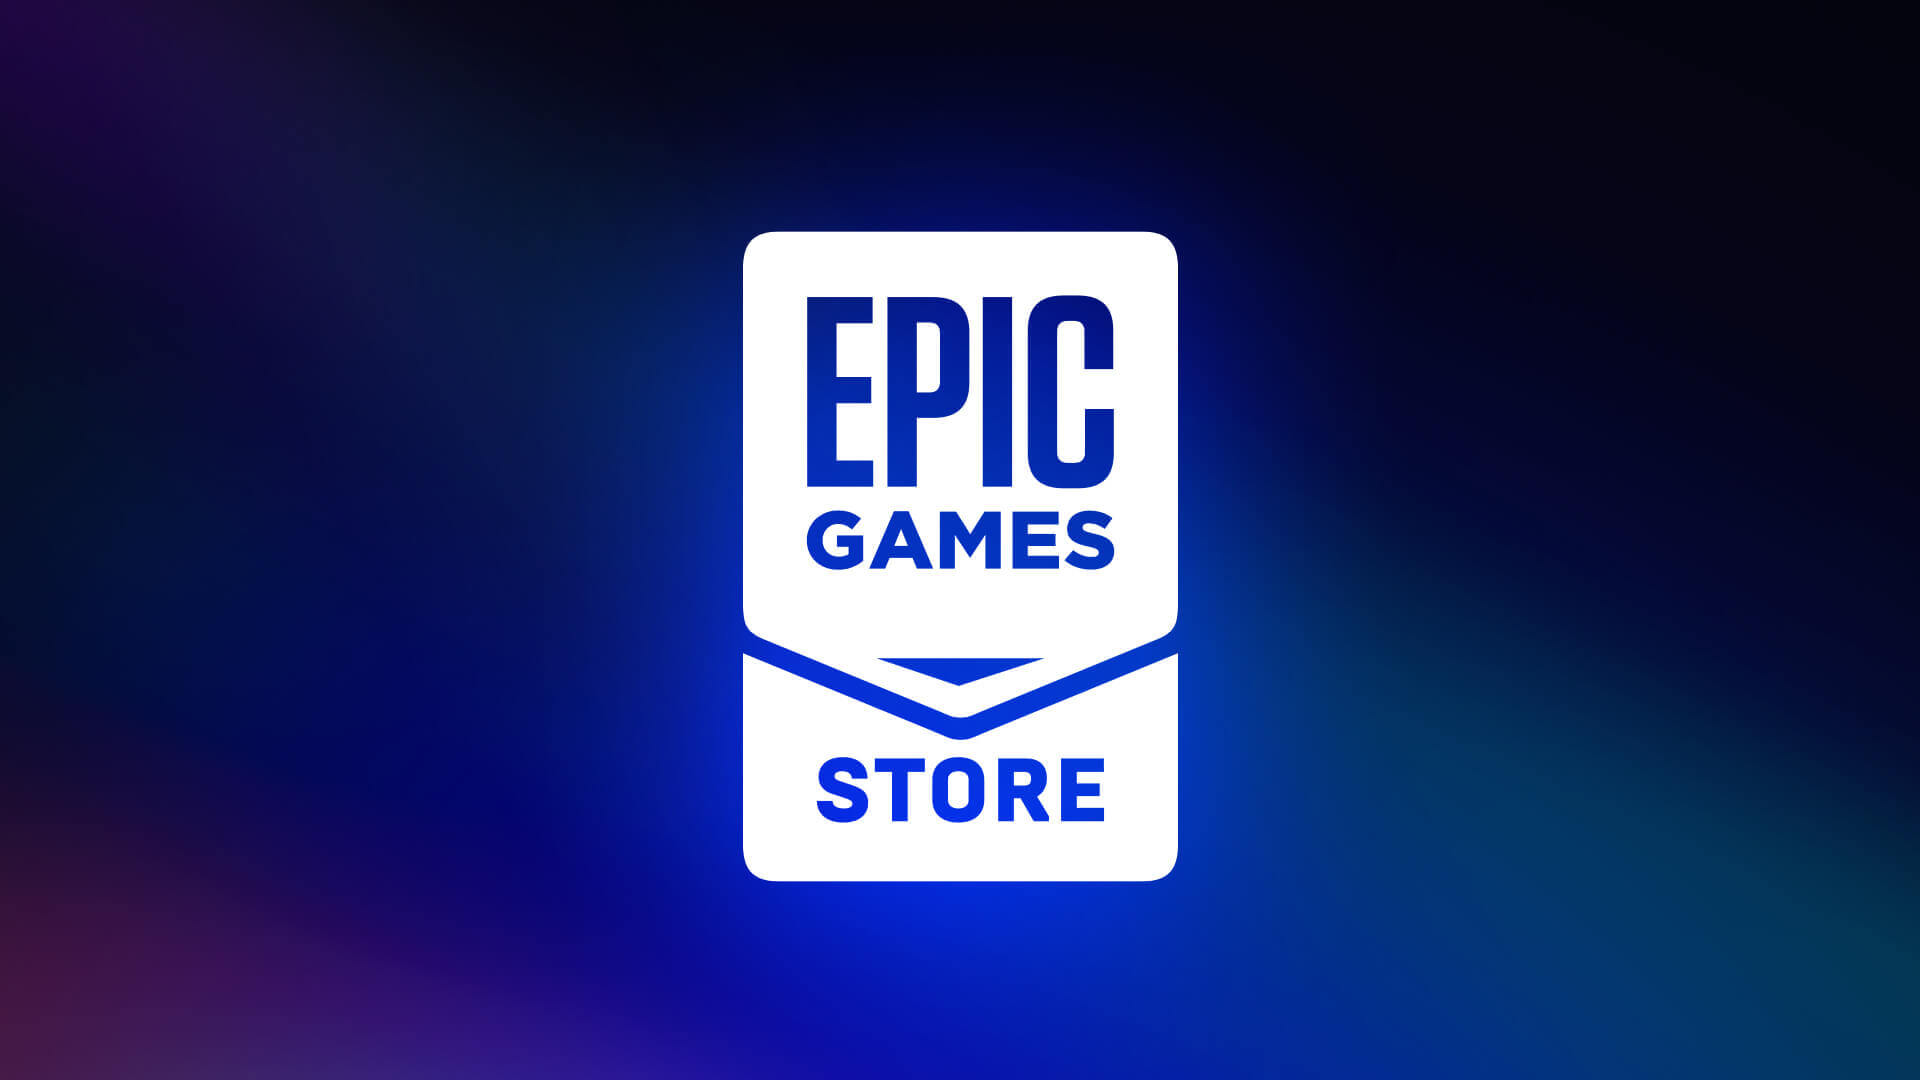 hoy podrás conseguir un nuevo juego gratis en la epic games store